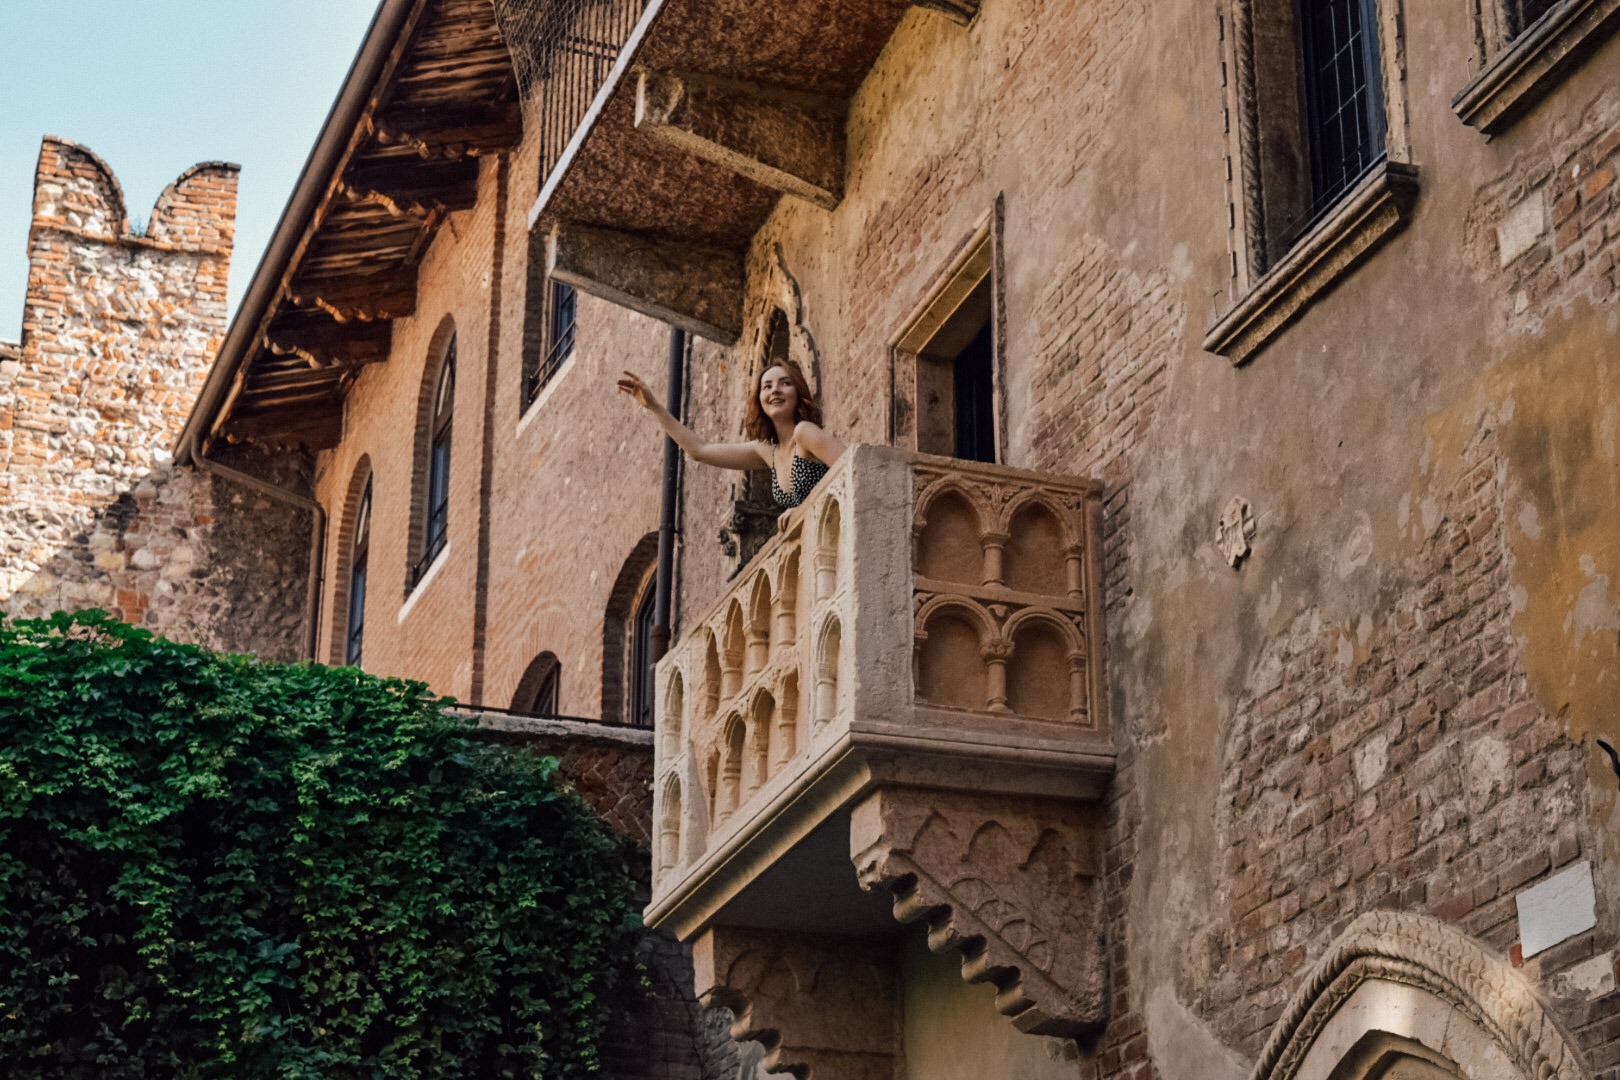 Sacada - Casa de Julieta - Verona